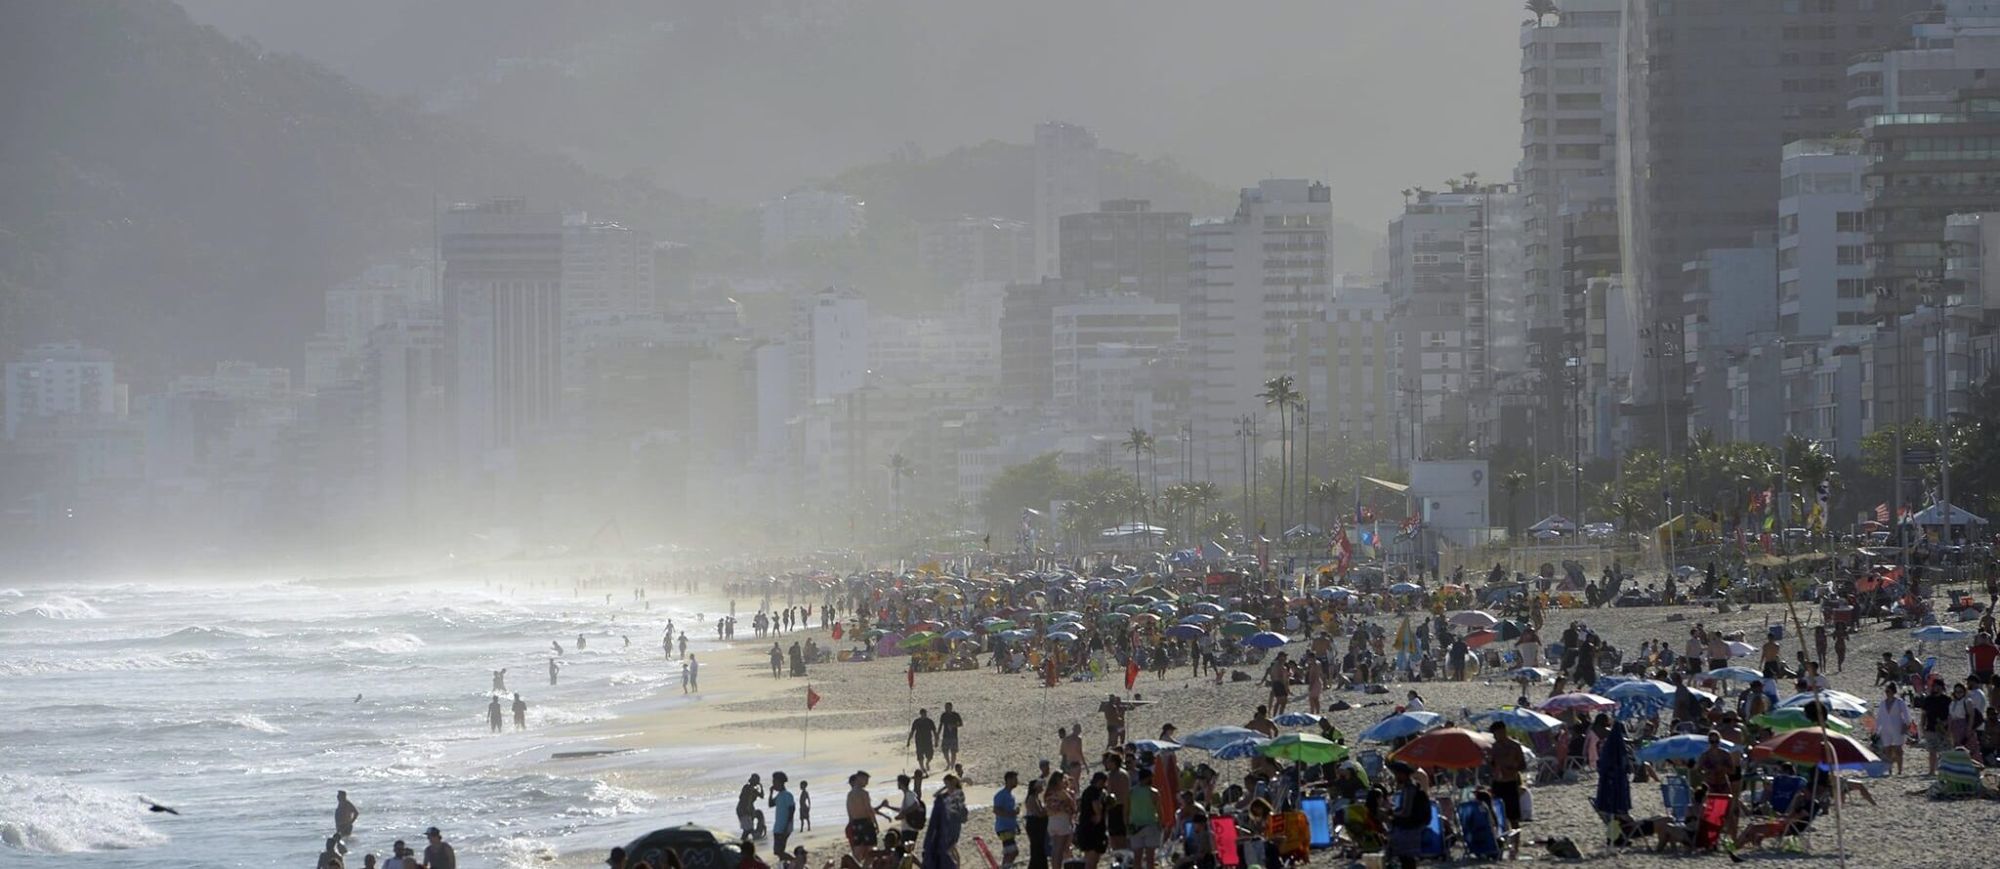 Beach in Rio de Janeiro. Image by Tomaz Silva/ABr